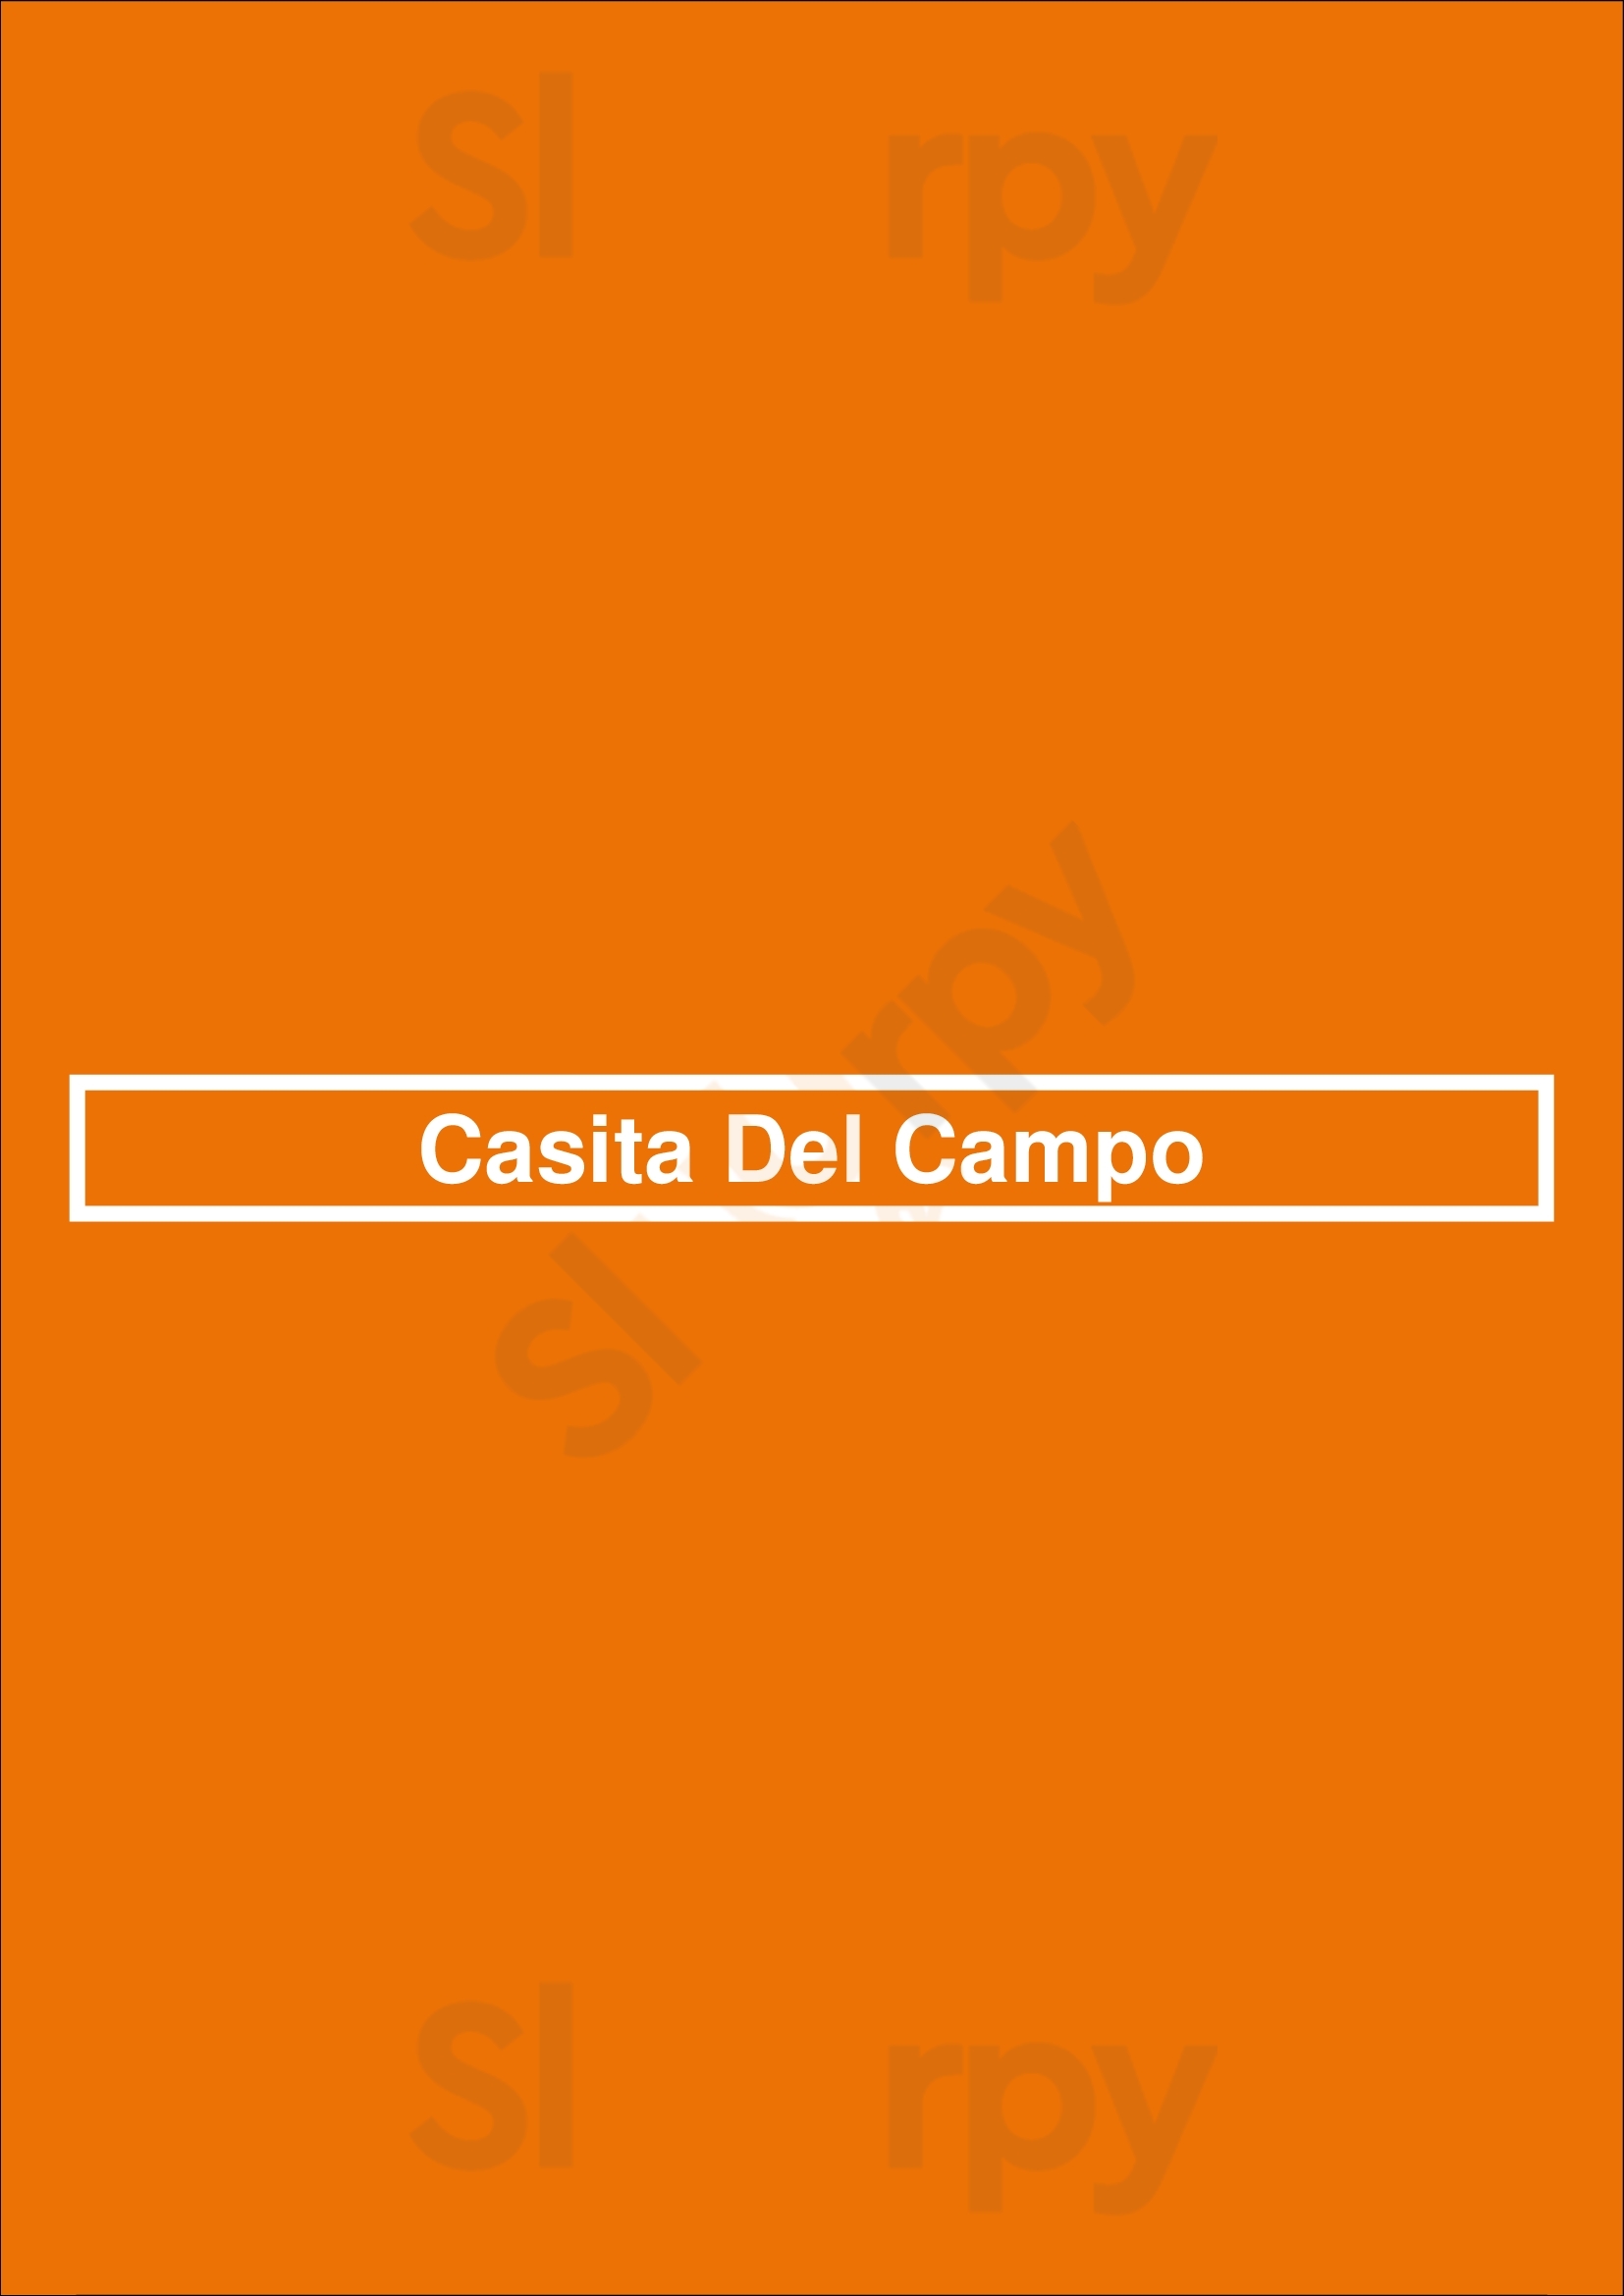 Casita Del Campo Los Angeles Menu - 1